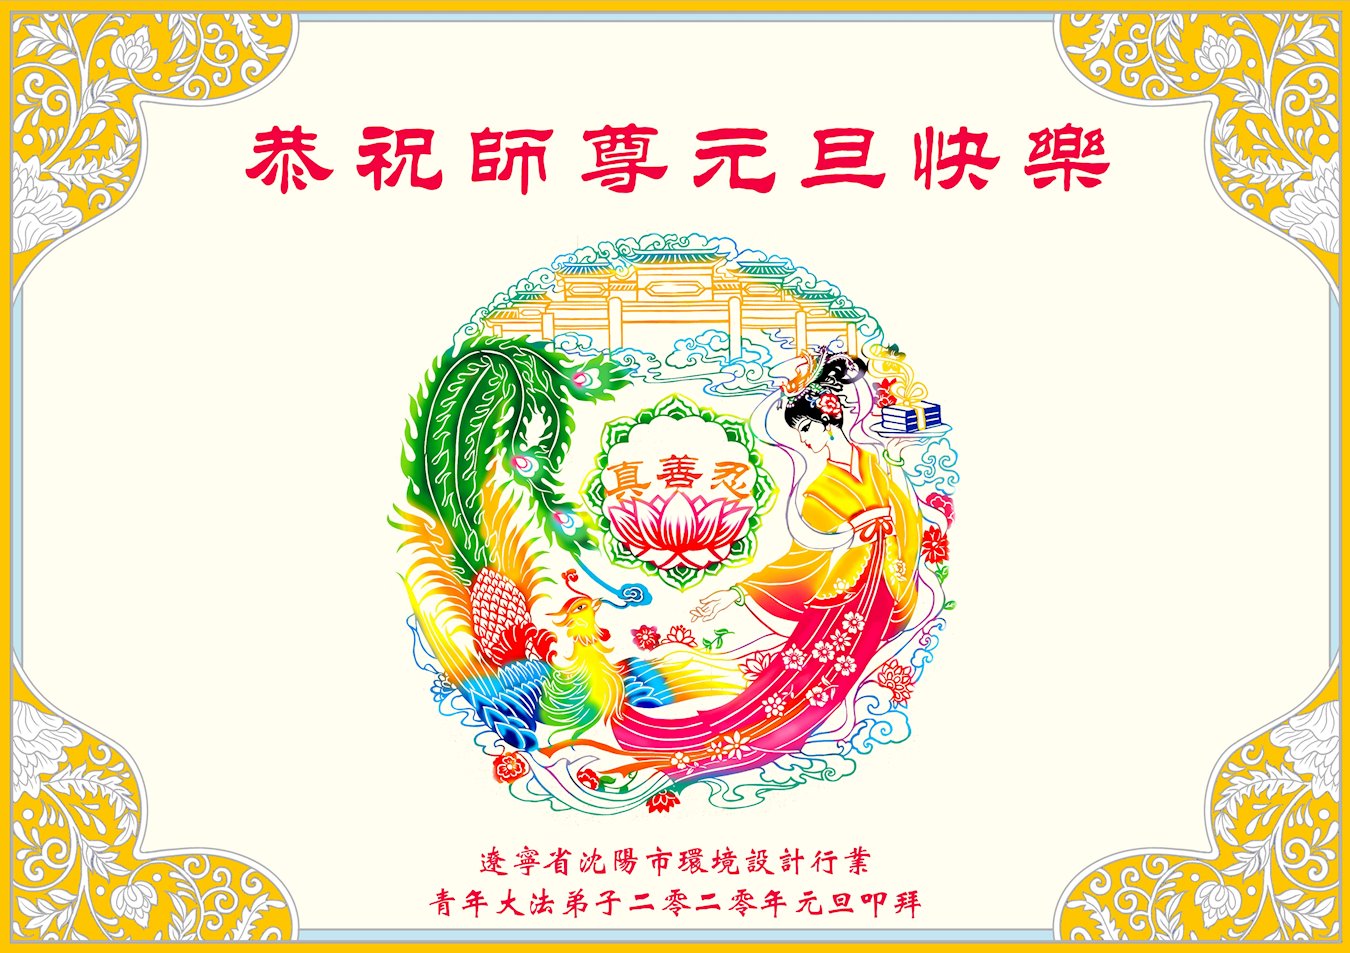 Image for article Les pratiquants de Falun Dafa de différentes professions en Chine souhaitent respectueusement à Maître Li Hongzhi une Bonne et Heureuse Année !